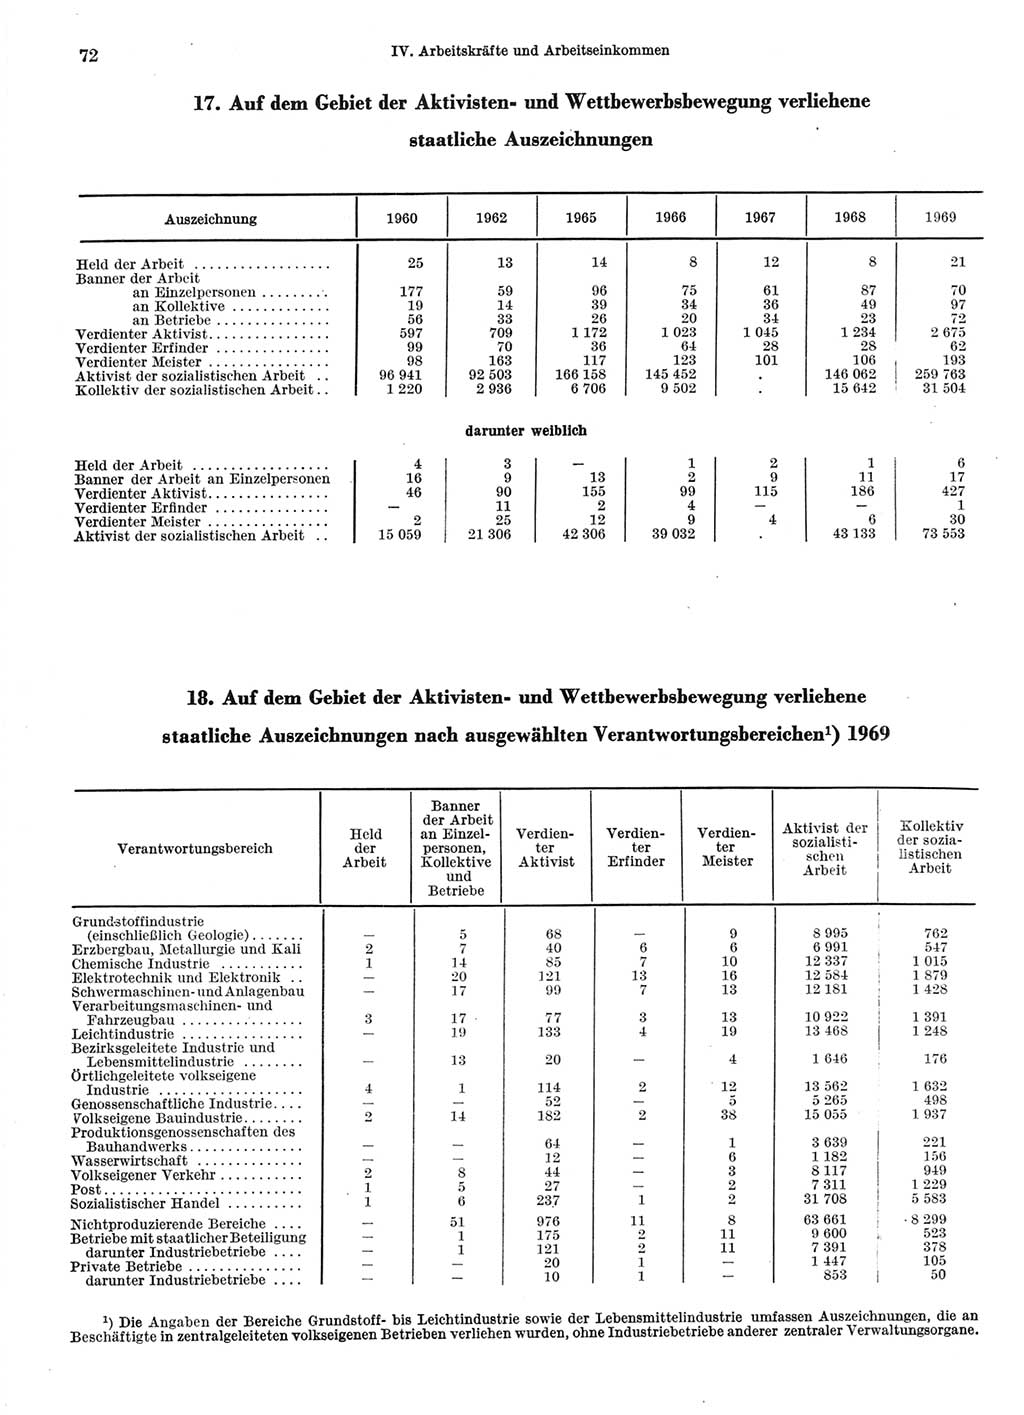 Statistisches Jahrbuch der Deutschen Demokratischen Republik (DDR) 1970, Seite 72 (Stat. Jb. DDR 1970, S. 72)